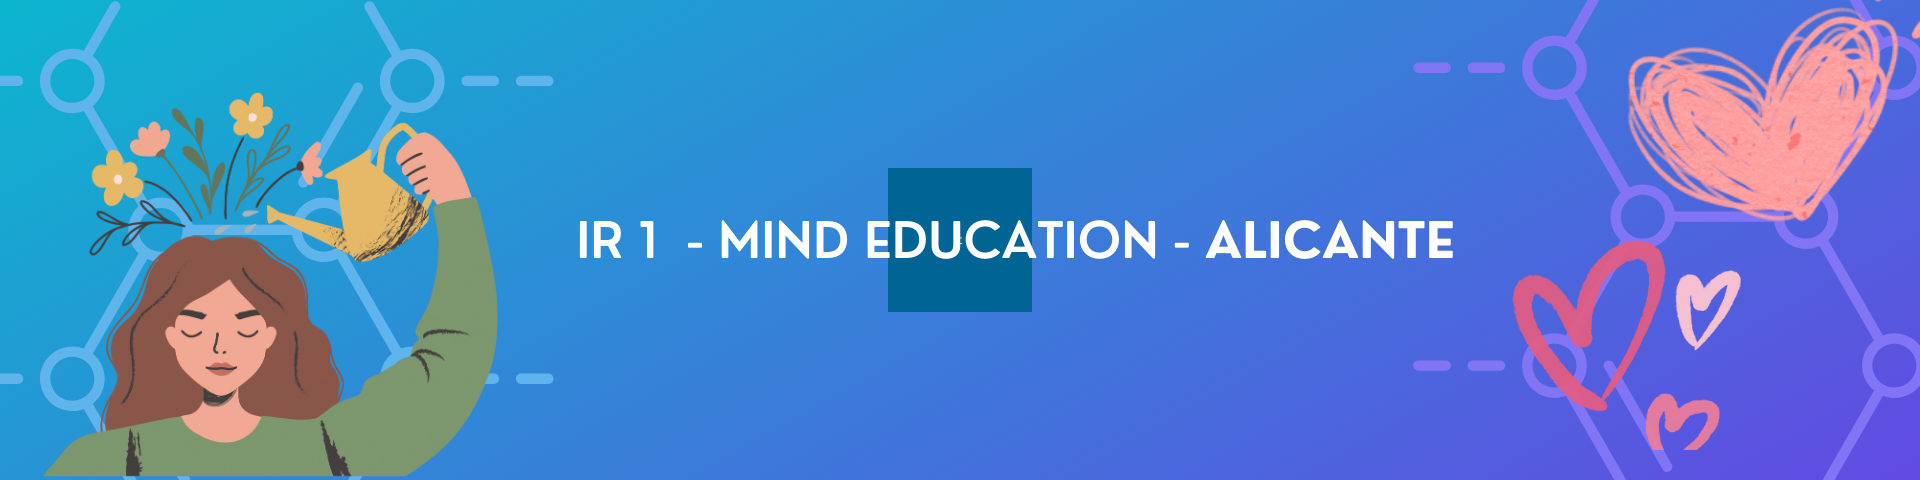 IR 1 - Mind Education